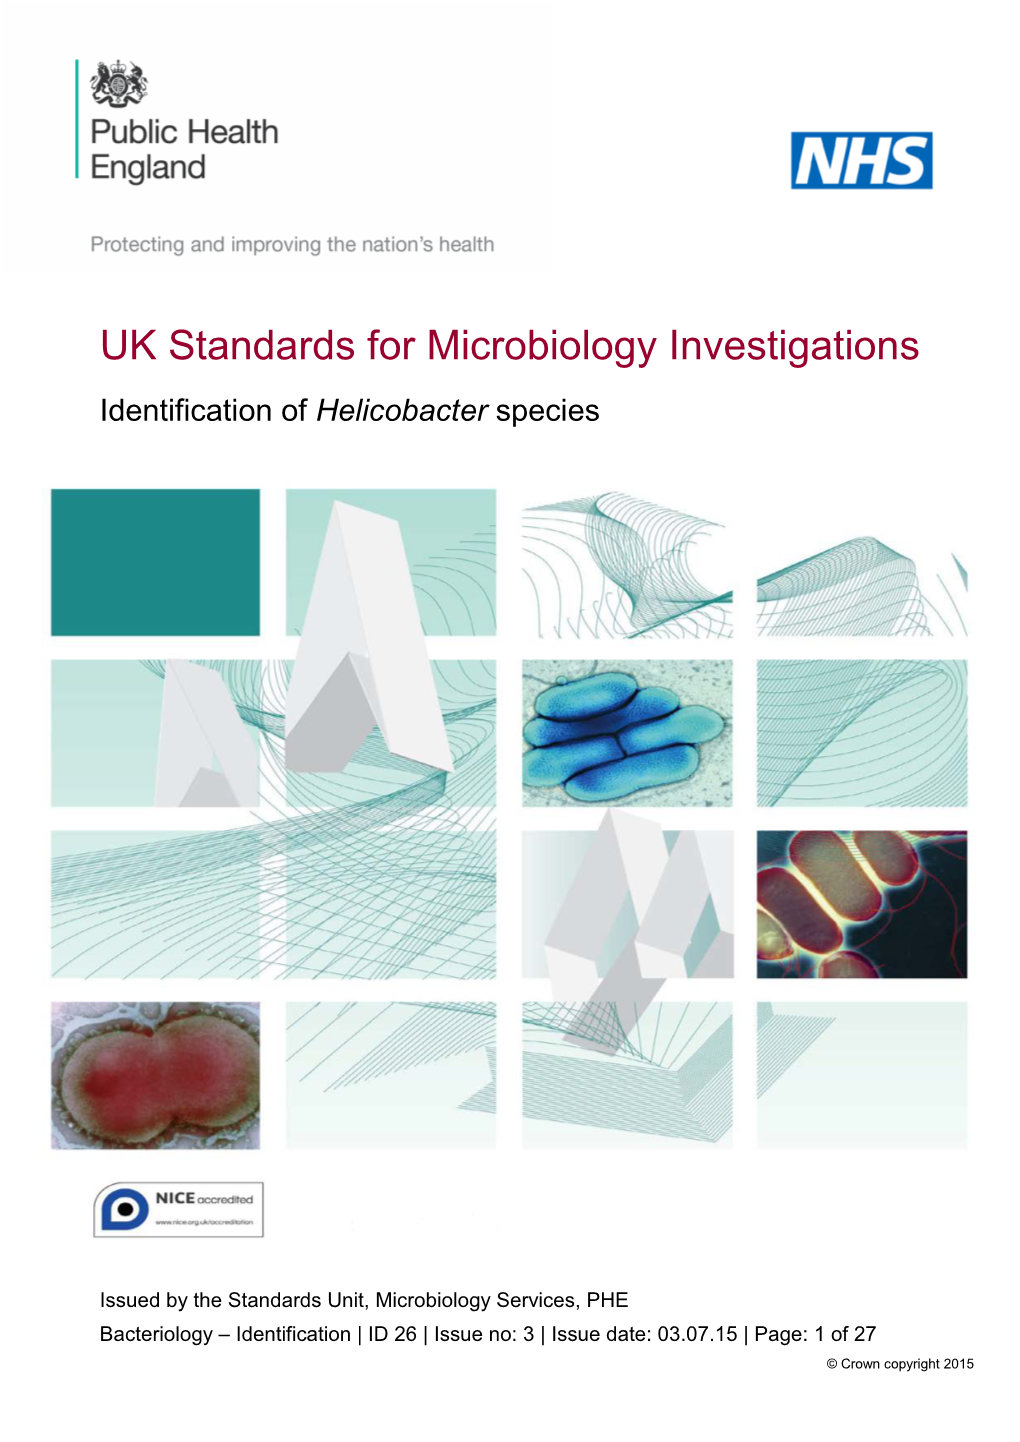 Identification of Helicobacter Species